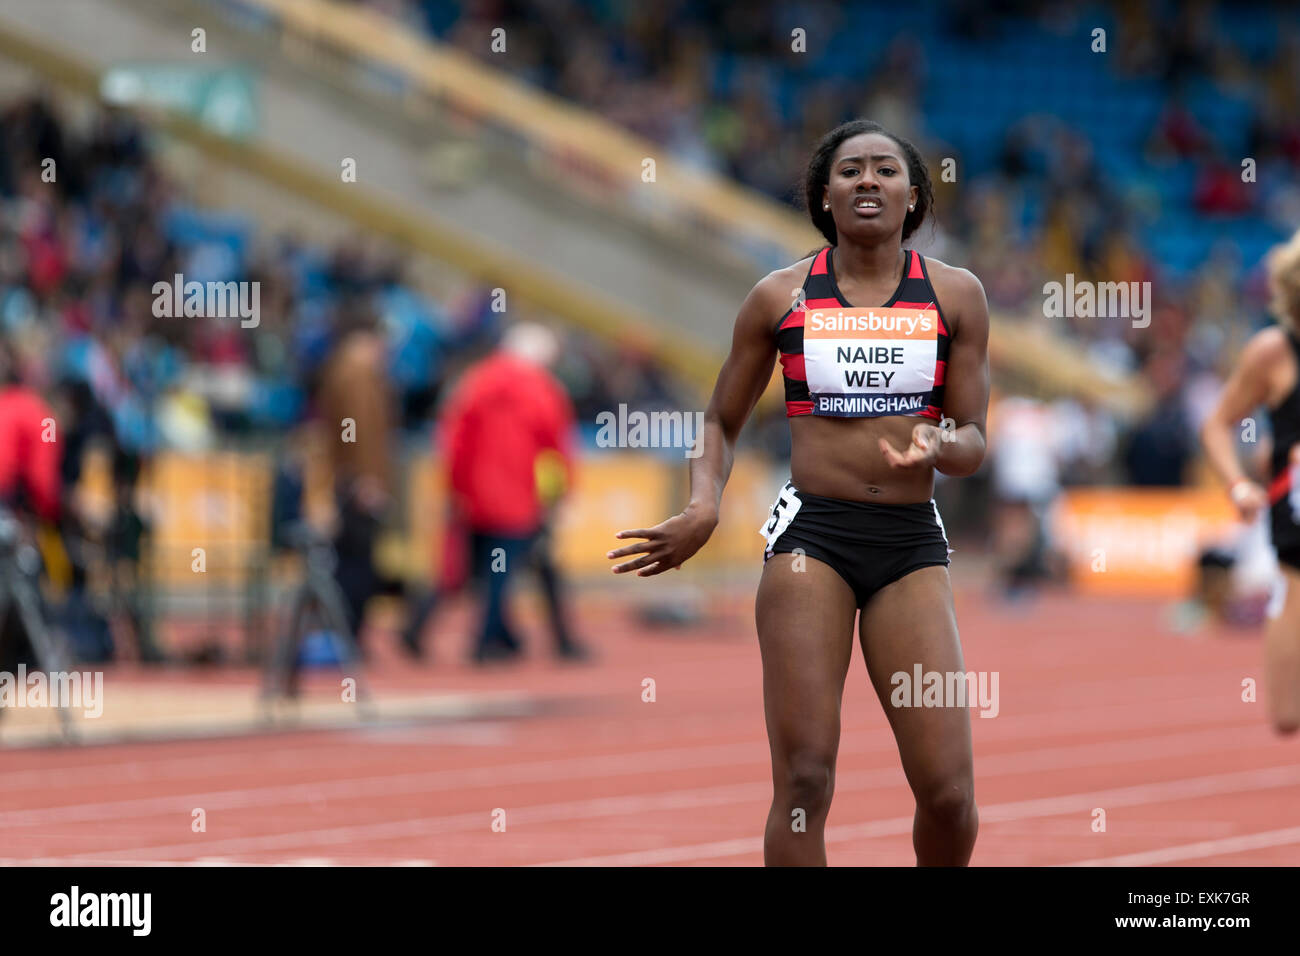 Aisha NAIBE-WEY Women's 400m Hurdles Heat 4, 2014 Sainsbury's British  Championships Birmingham Alexander Stadium UK Stock Photo - Alamy